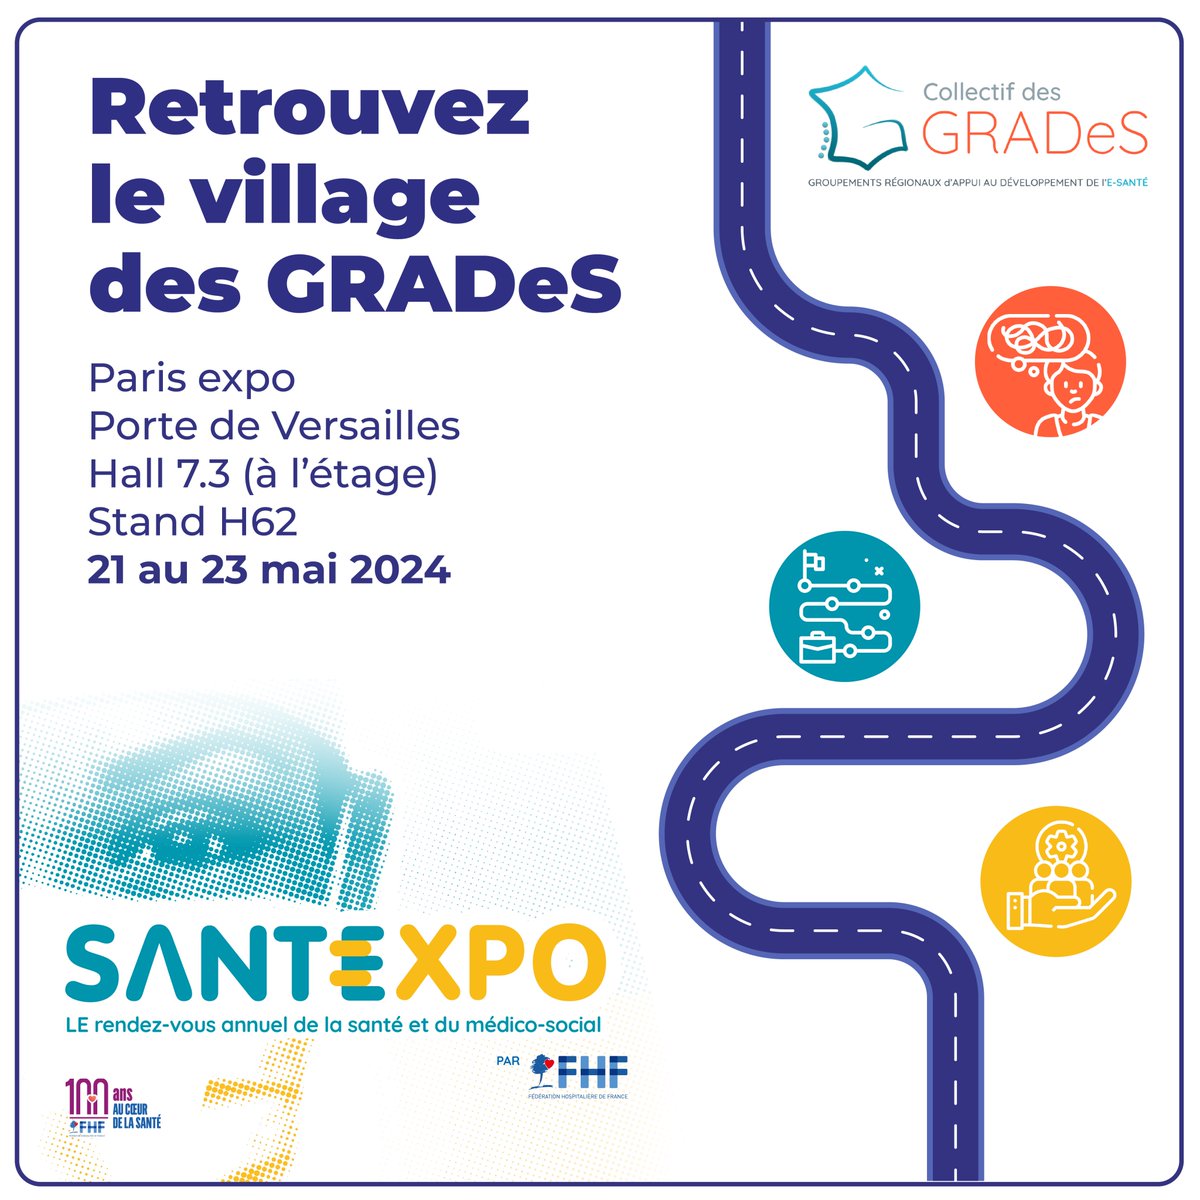 📢Retrouvez le village des GRADeS sur #SantExpo du 21 au 23 mai 2024 !

📍 Paris expo  Hall 7.3 - Stand H62

🗣 Venez échanger autour des sujets e-santé !

👉 Pour participer : santexpo.com/salon-santexpo…